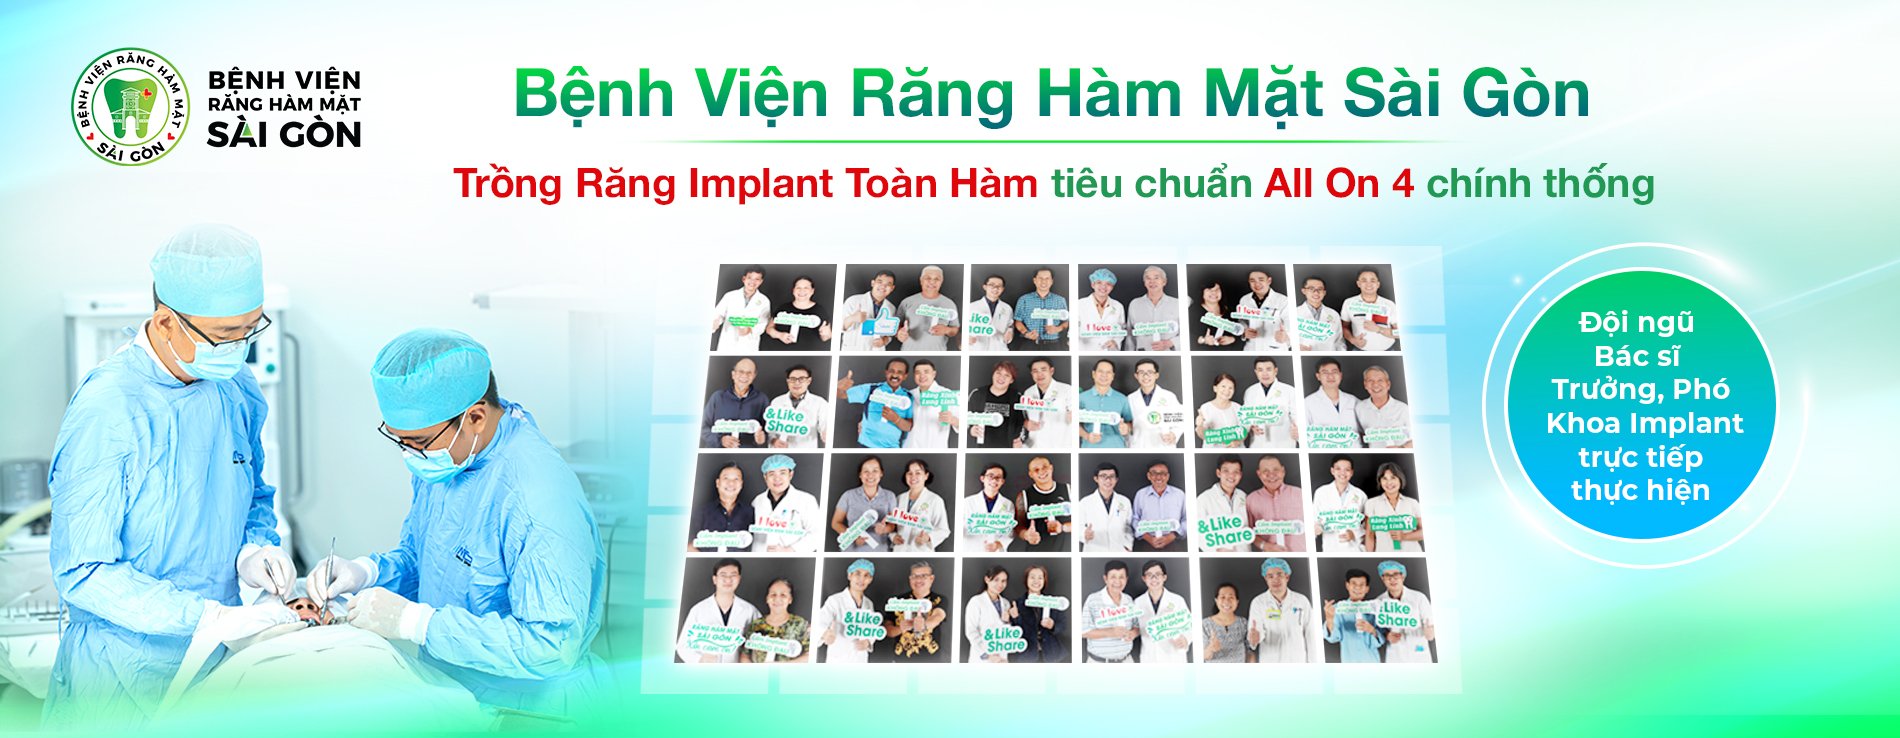 Bệnh Viện Răng Hàm Mặt Sài Gòn - Trồng răng Implant Toàn Hàm tiêu chuẩn All On 4 chính tống